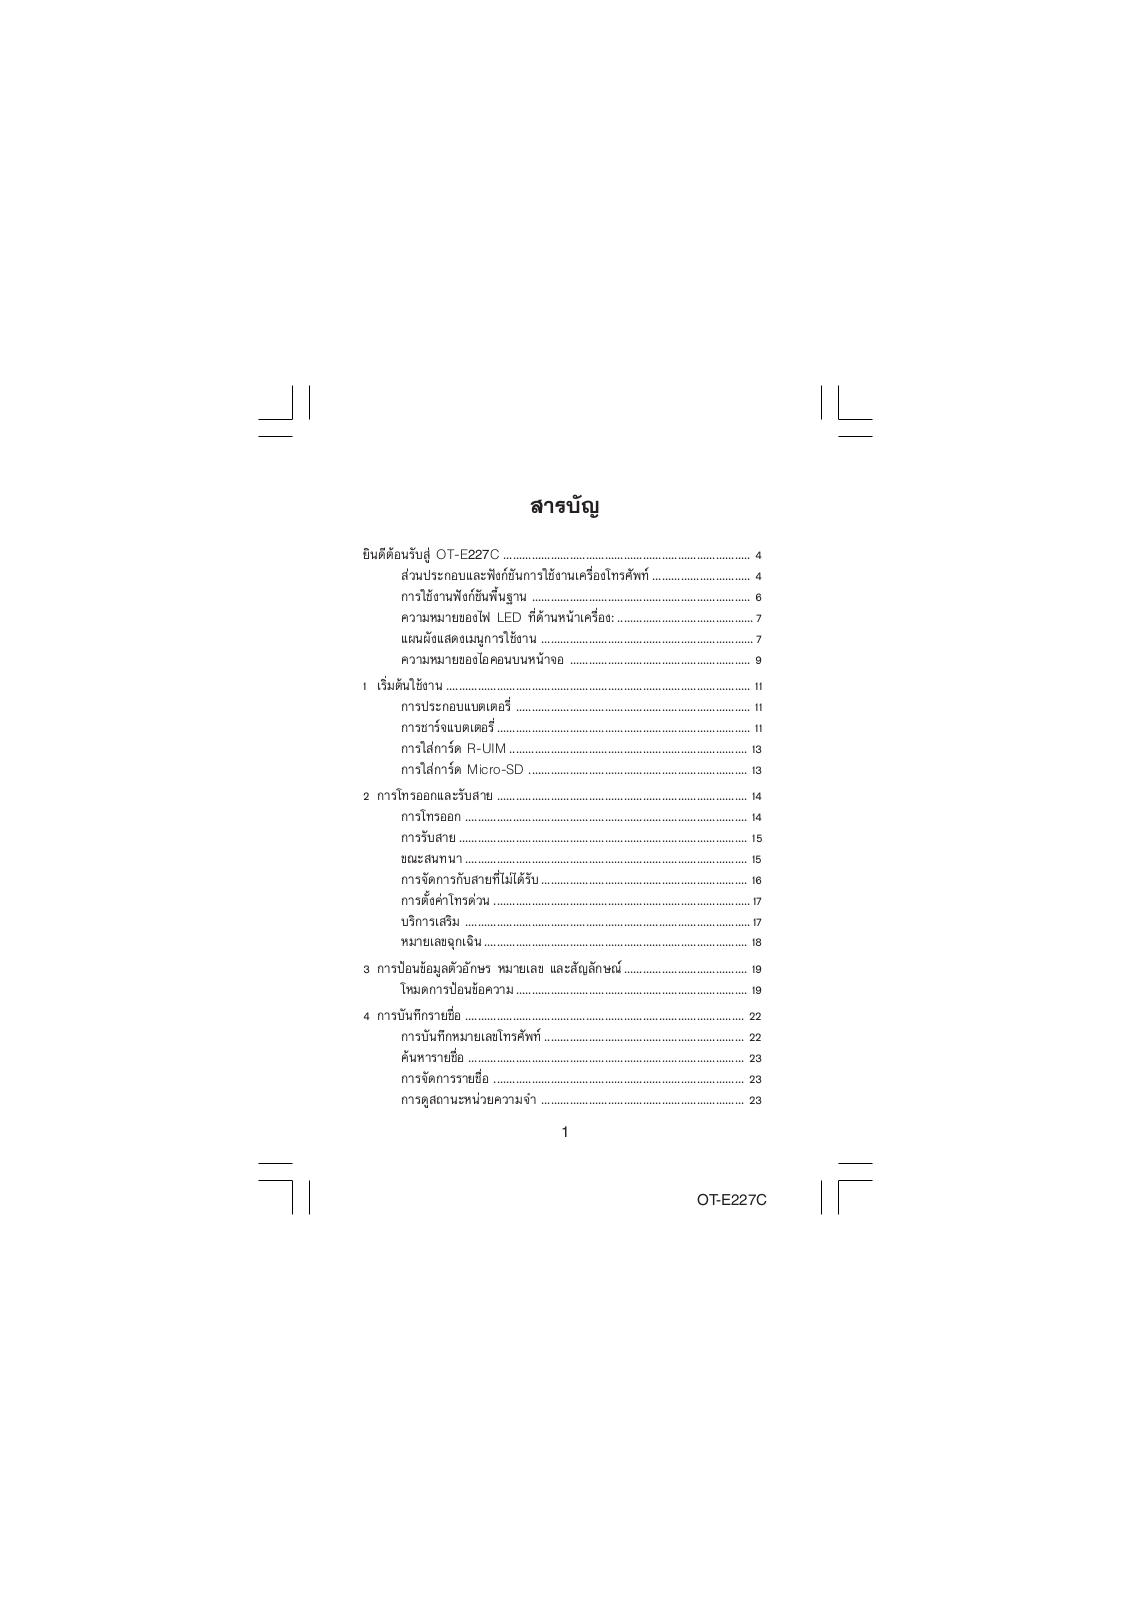 Alcatel OT-E227C User Manual